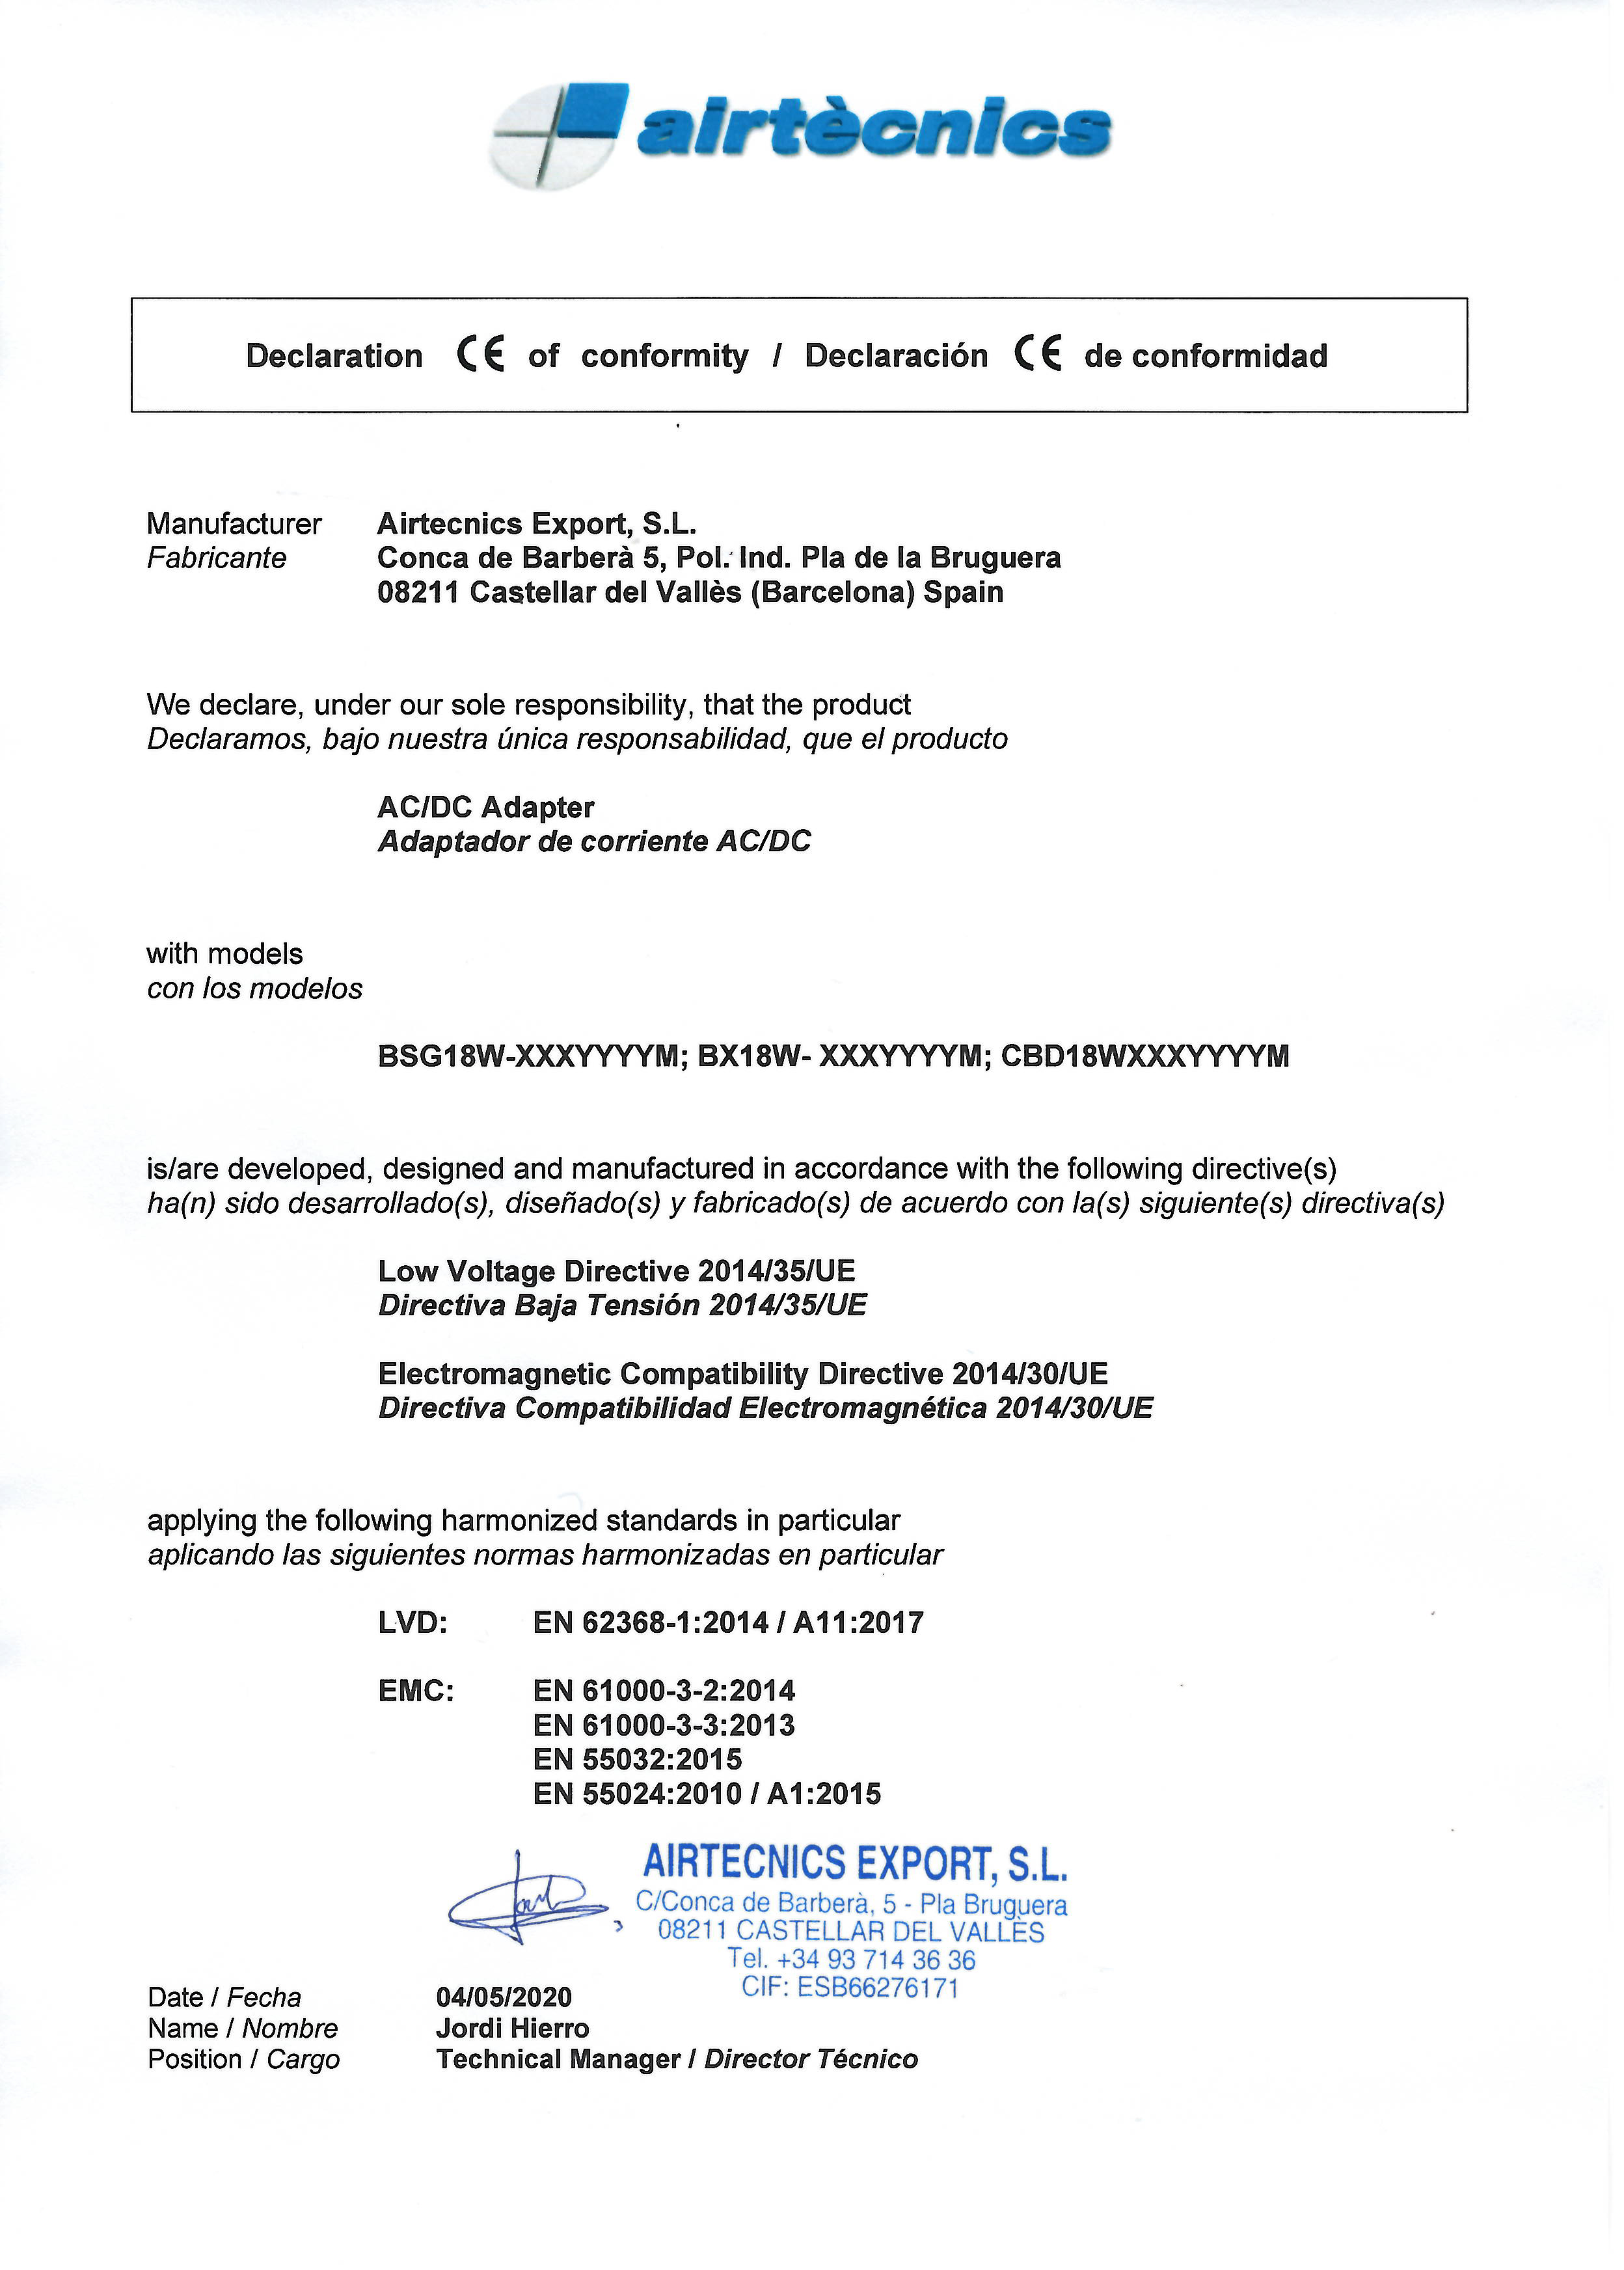 Conformity Declaration Airtècnics Export - Wellisair AC_DC Adapter